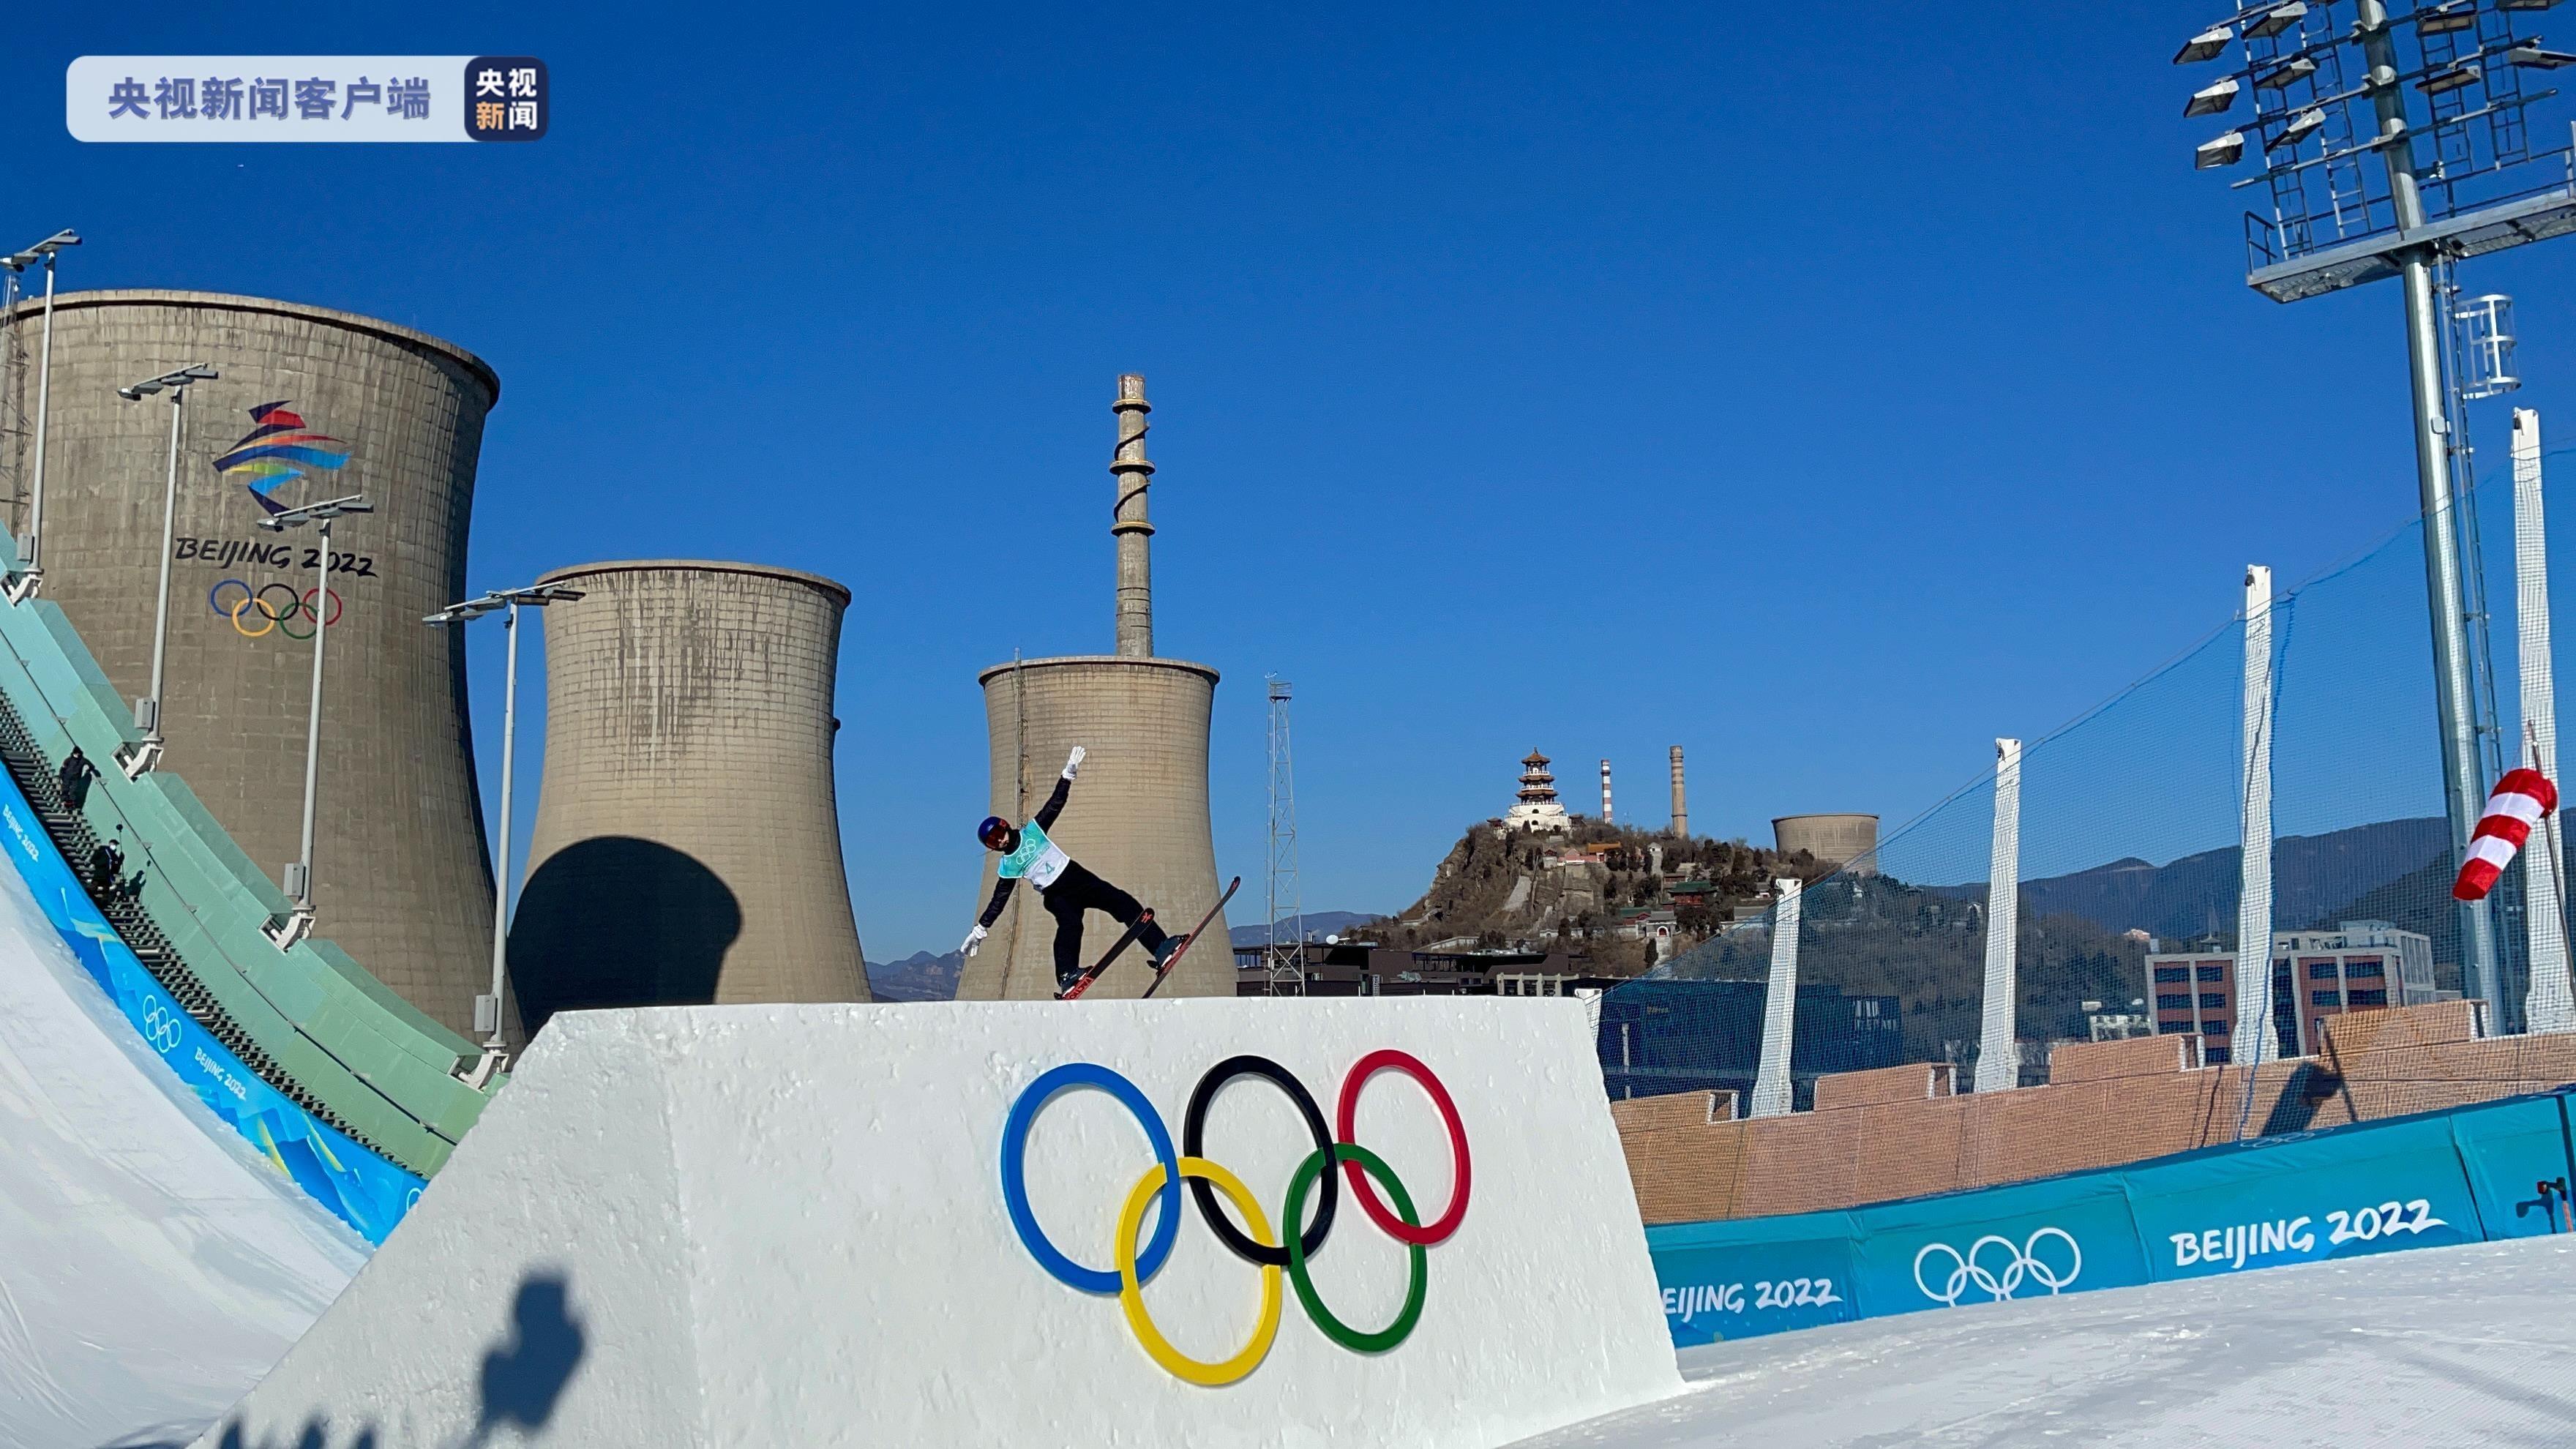 ابراز خرسندی ورزشکاران المپیکی از پیست اسکی بیگ ایر شوئو گانگا